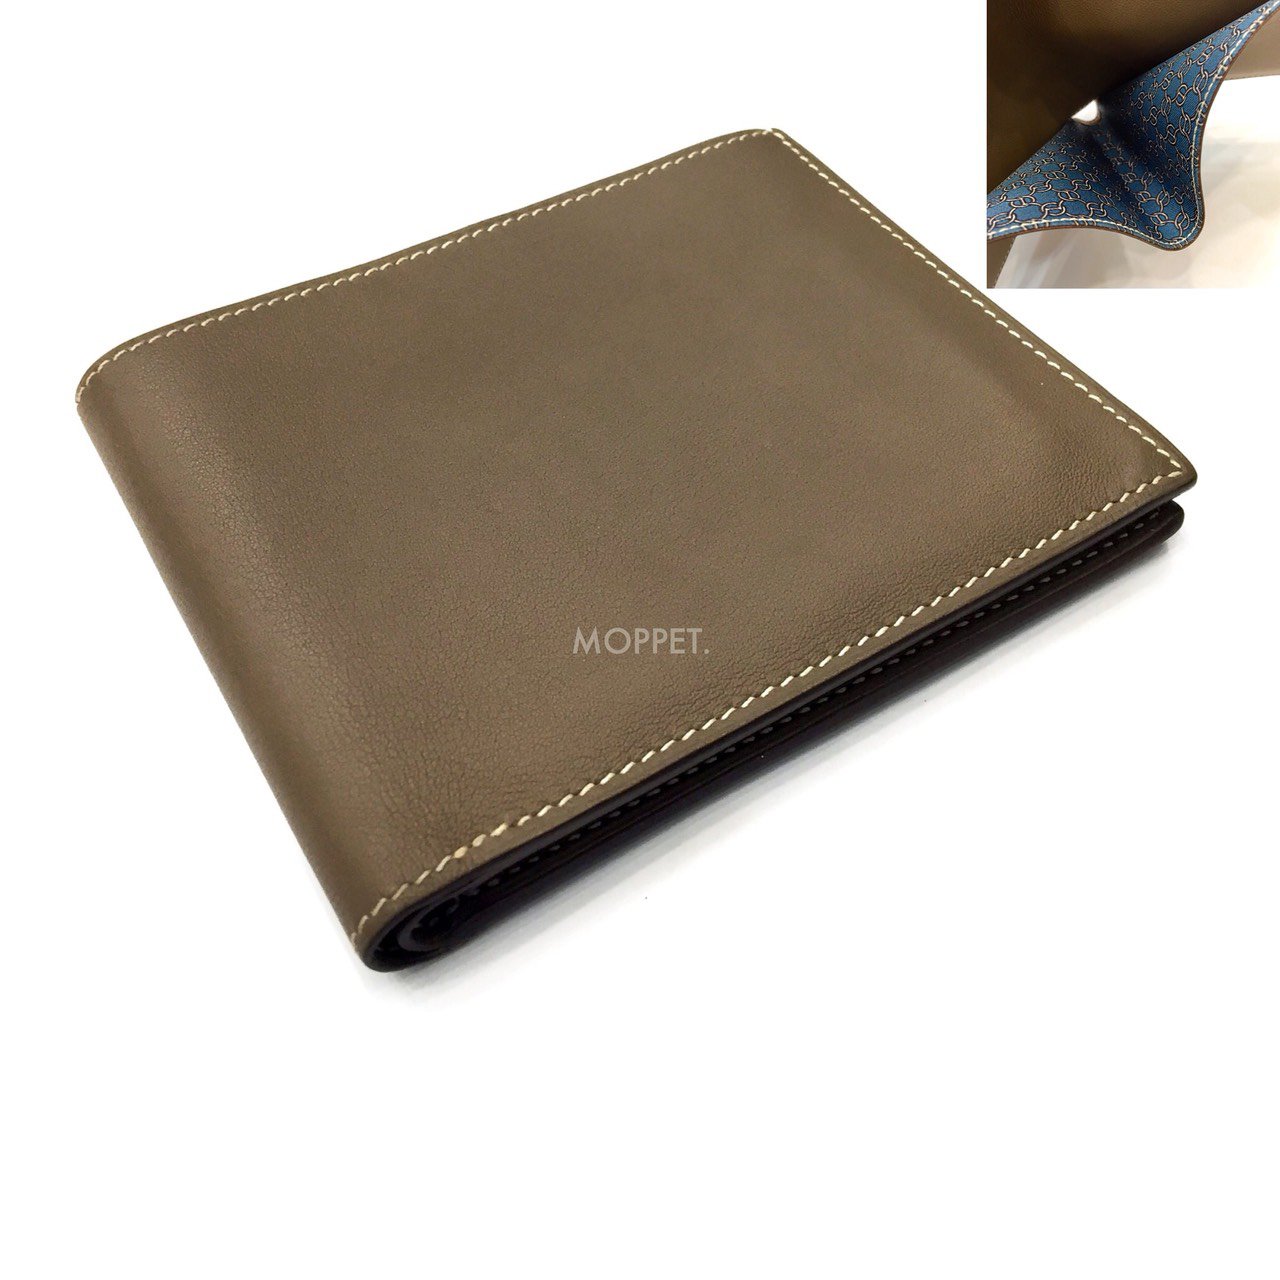 Used Hermes MC2 Wallet in Etoupe Swift